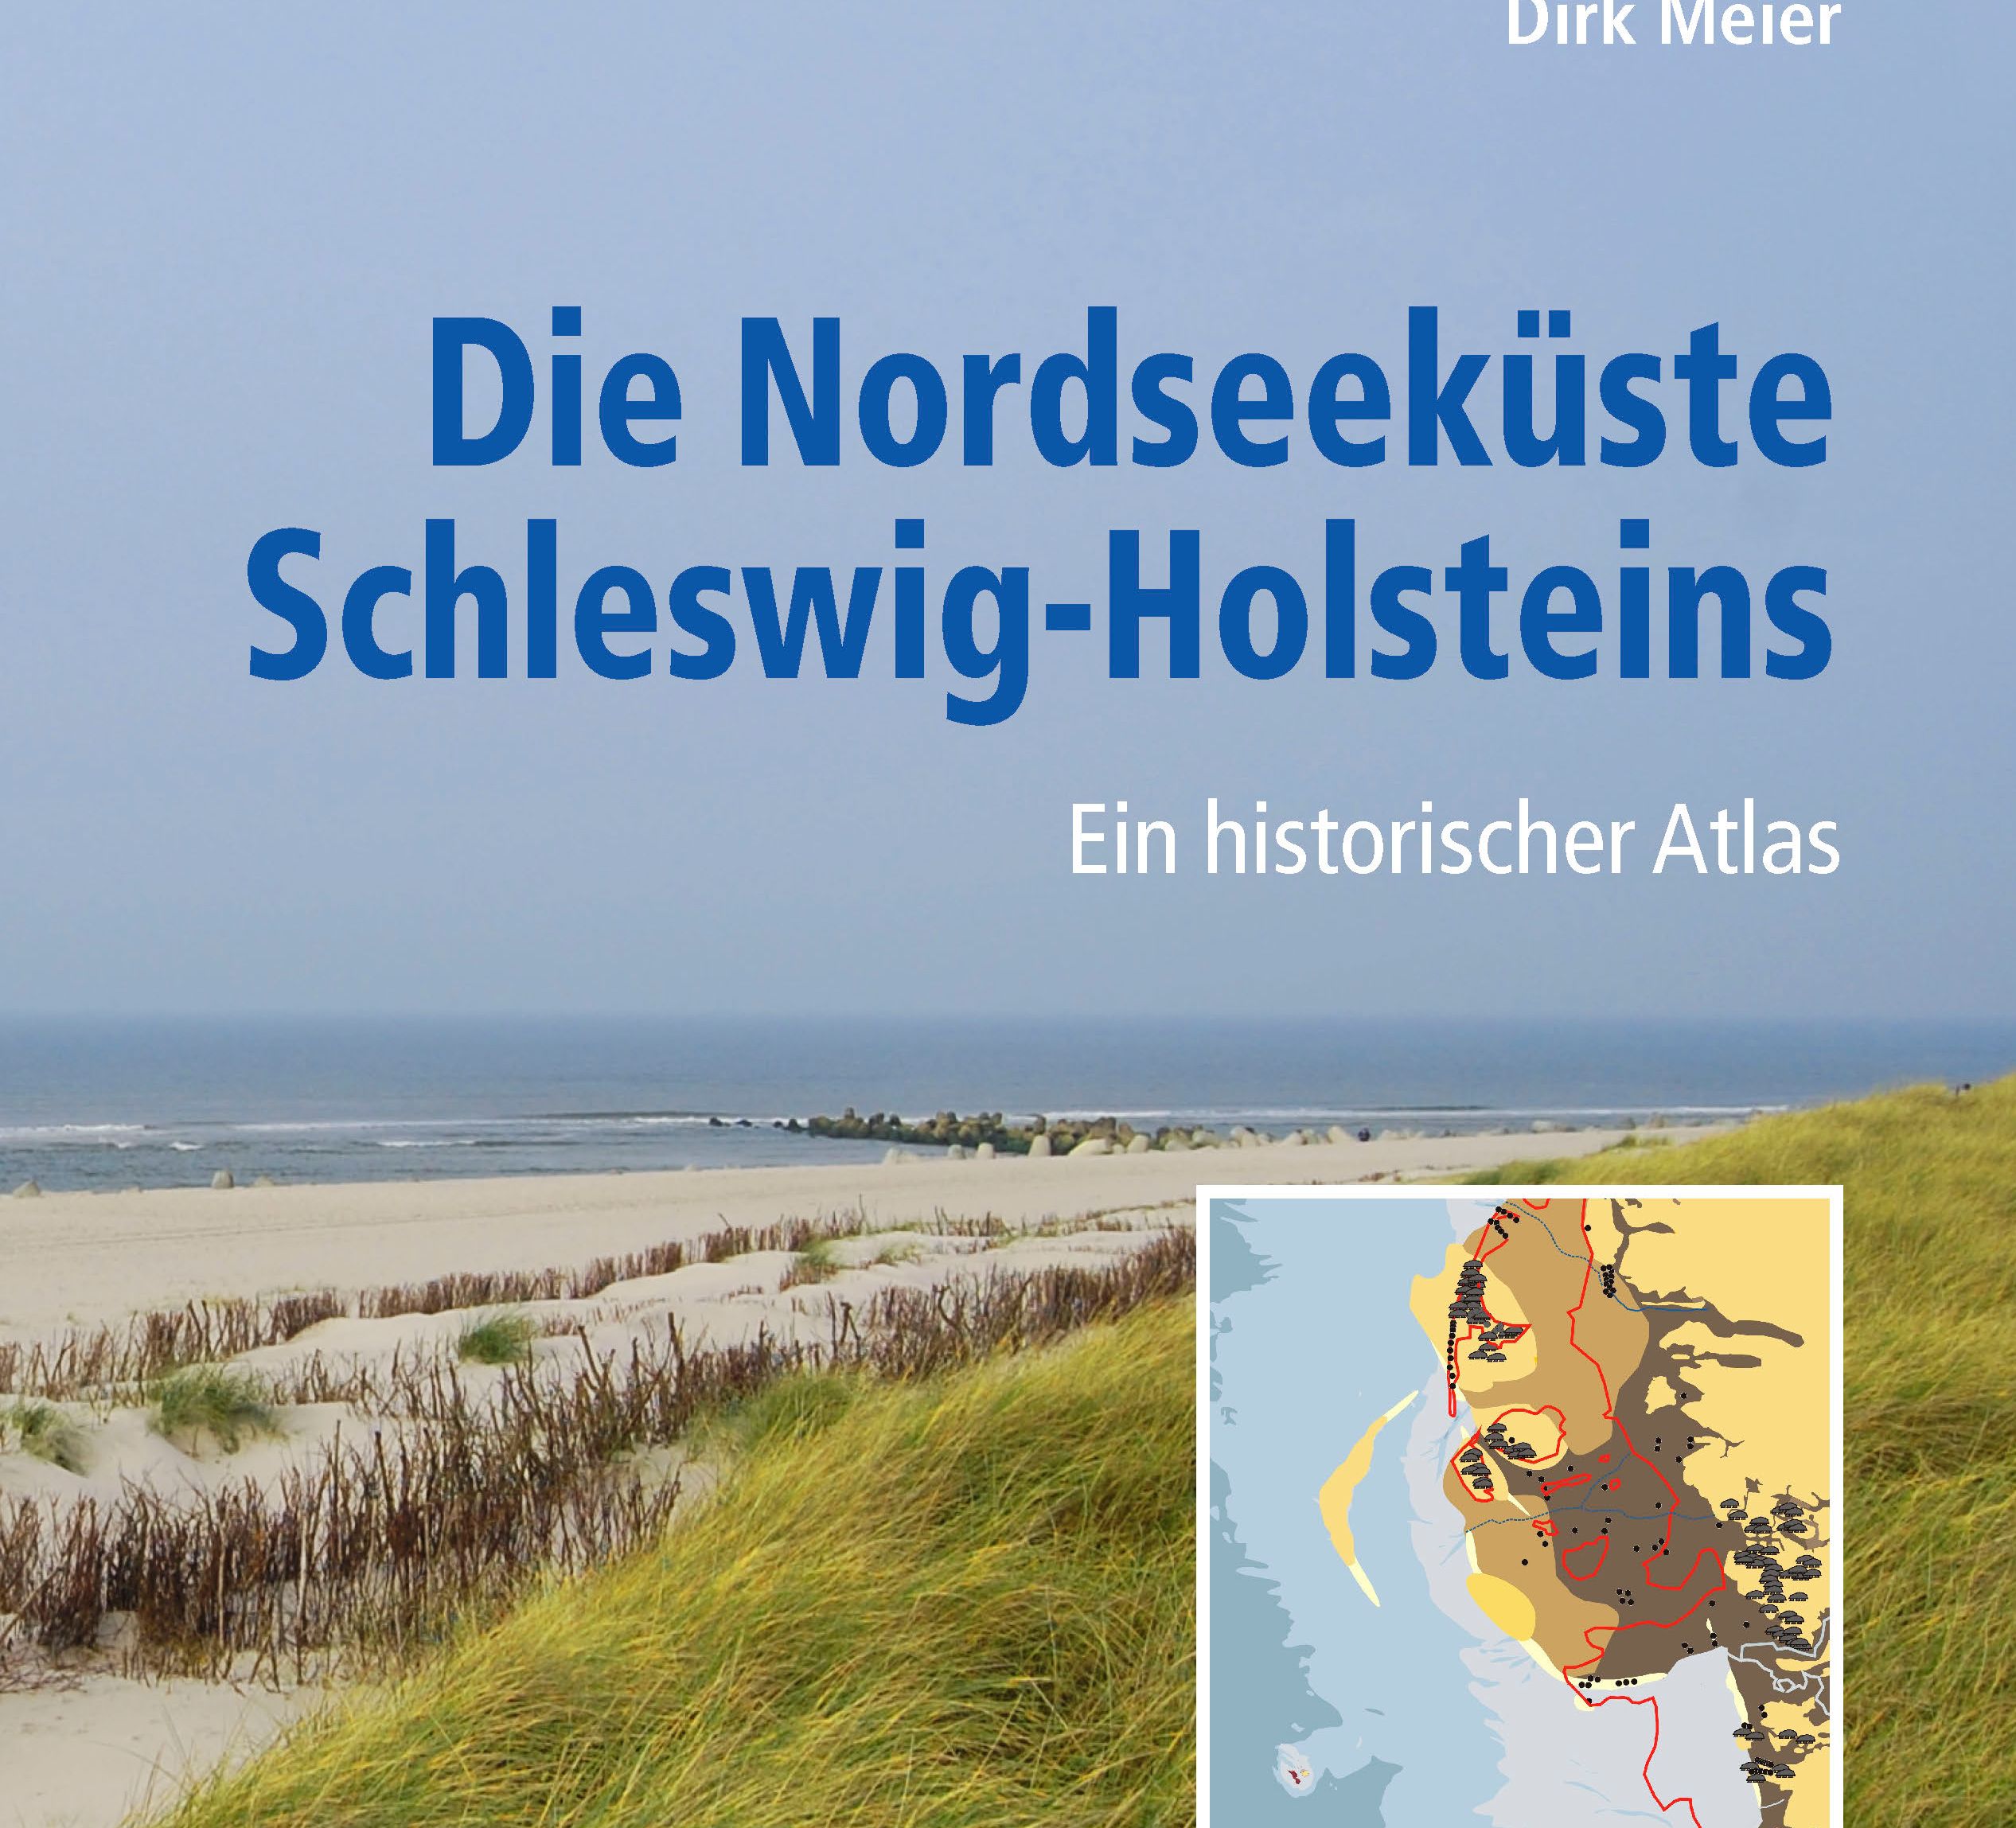 Buchcover "DIe Nordseeküste Schleswig-Holsteins" mit Foto, wo man auf das Meer hinausblickt